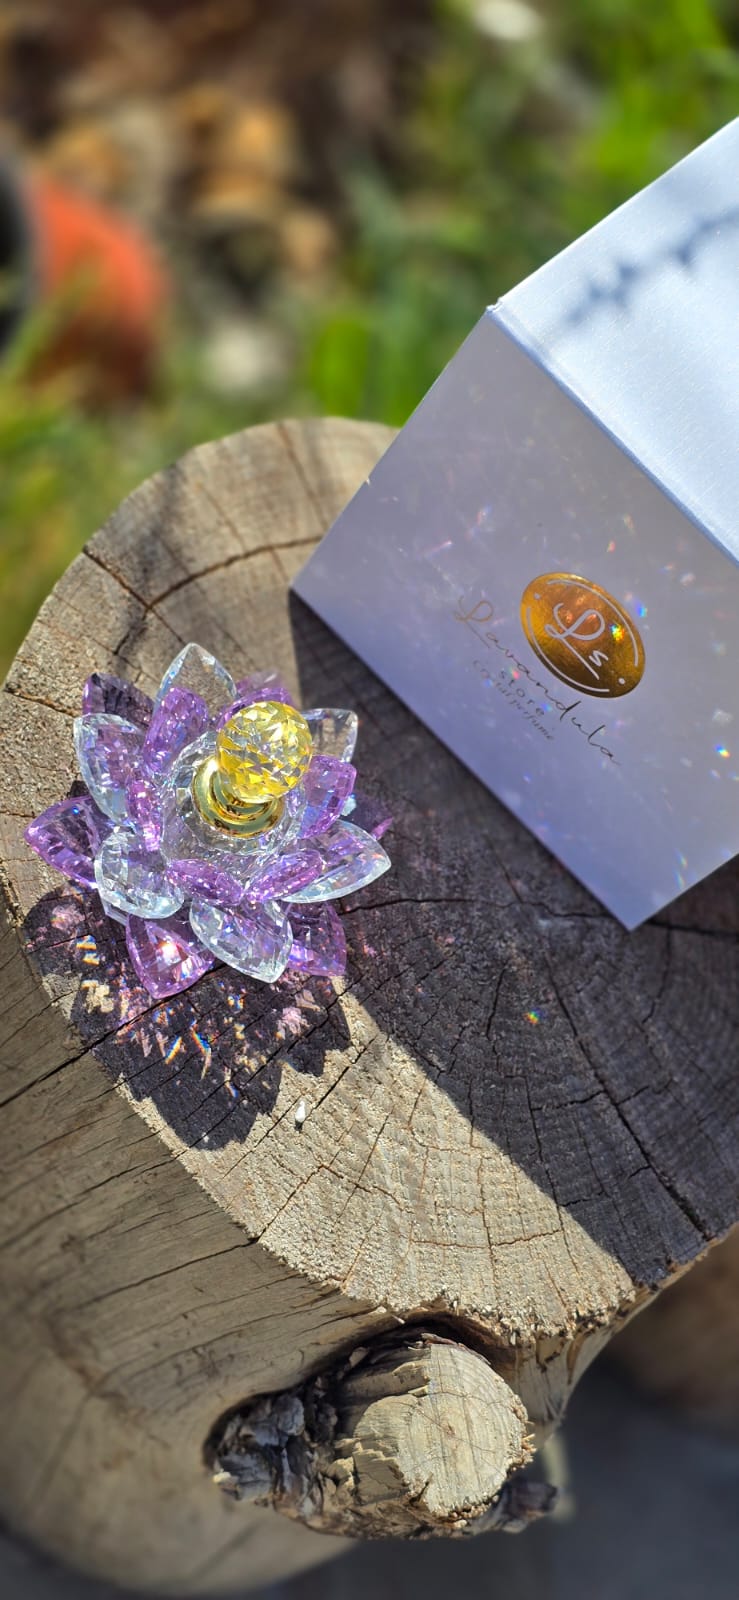 Lotus crystal flowers with (Dawn) parfum from lavandulastore